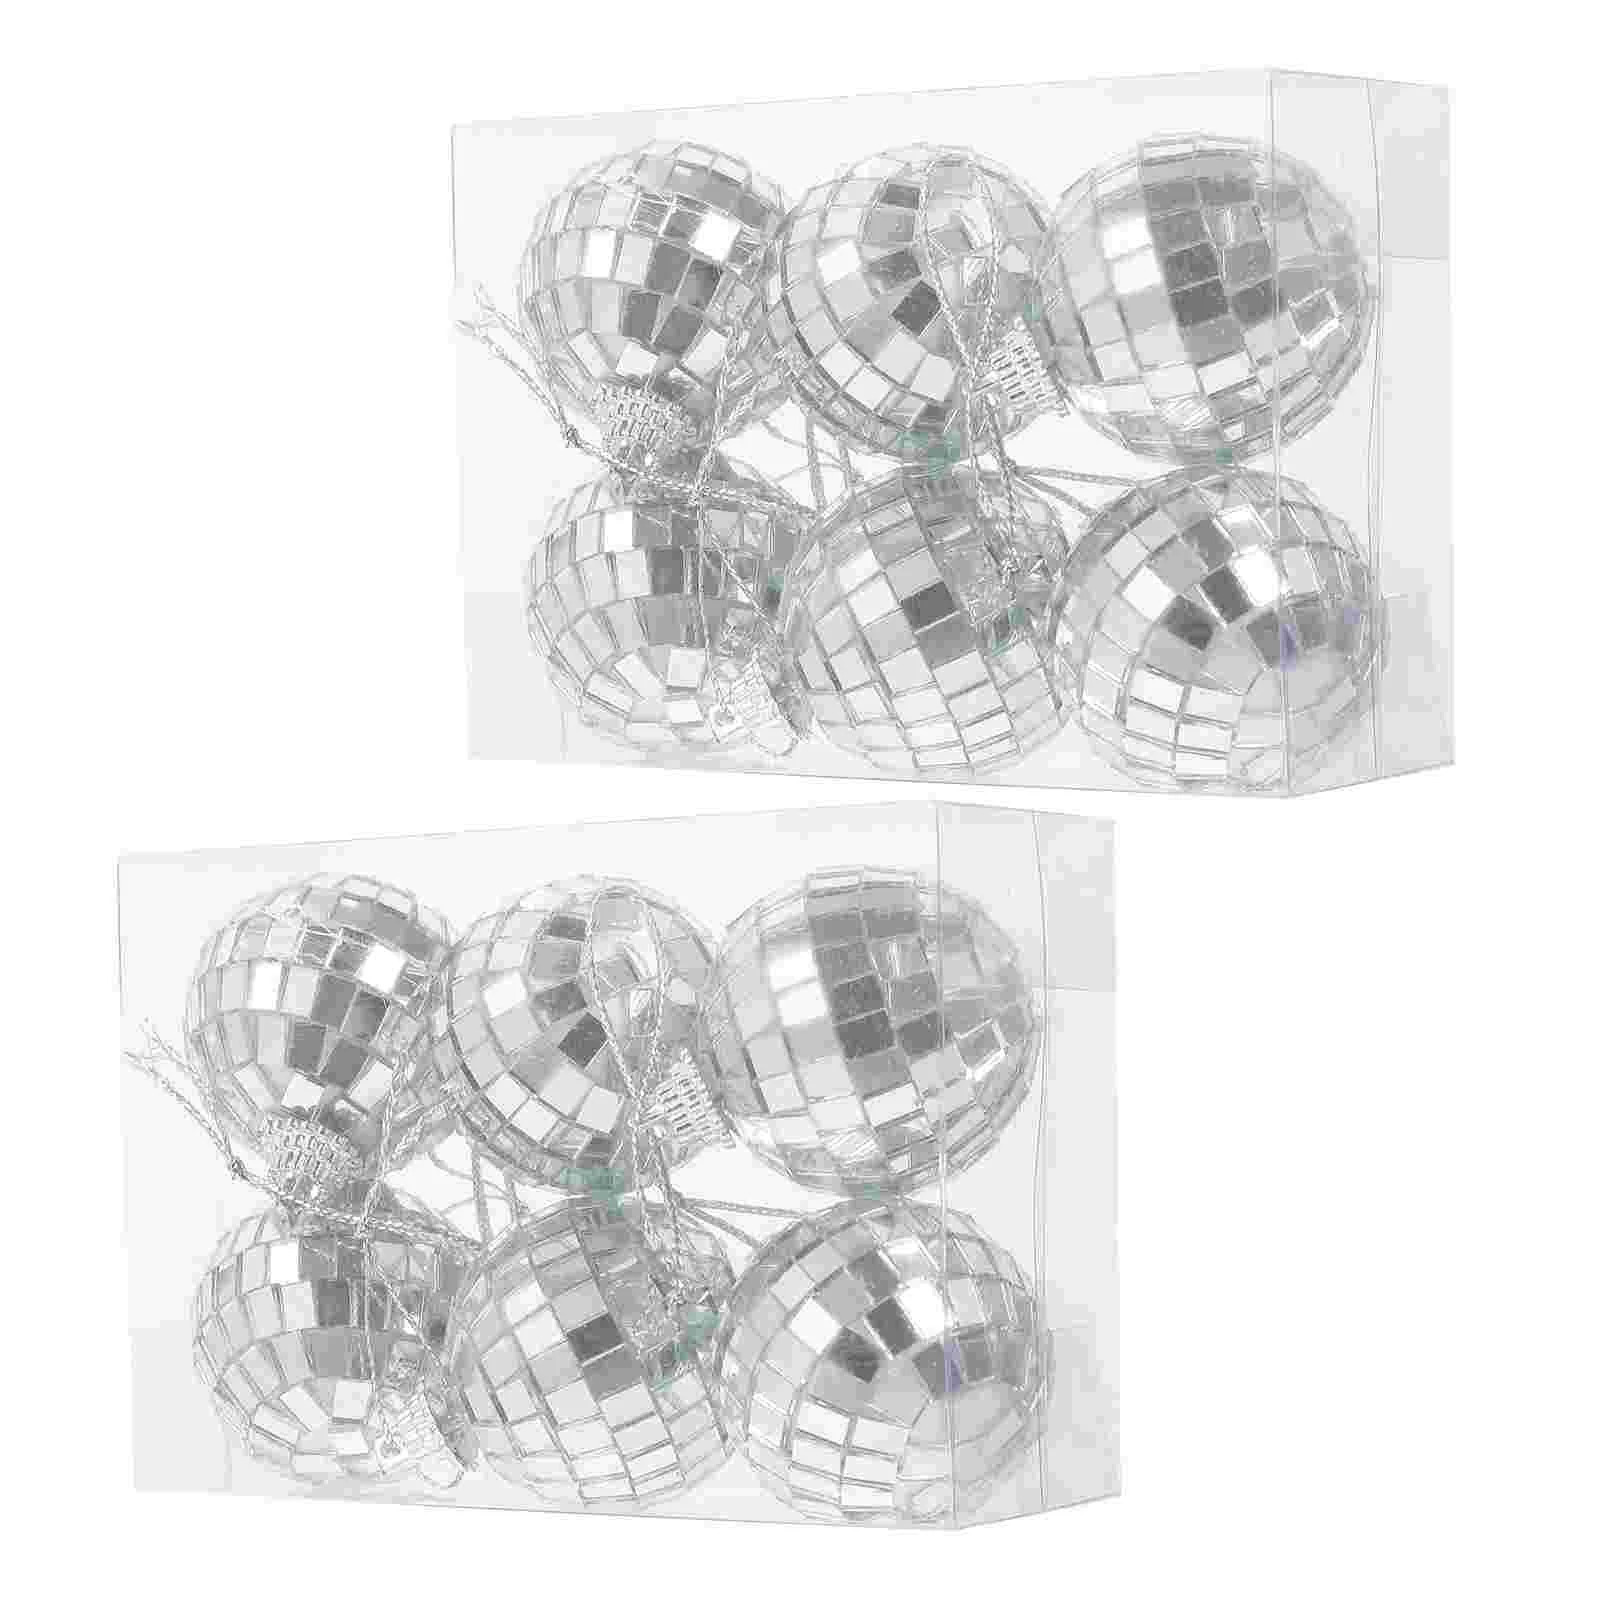 

Светоотражающий шар для дискотеки, зеркальные шарики, шикарные маленькие фотообои, украшения КТВ